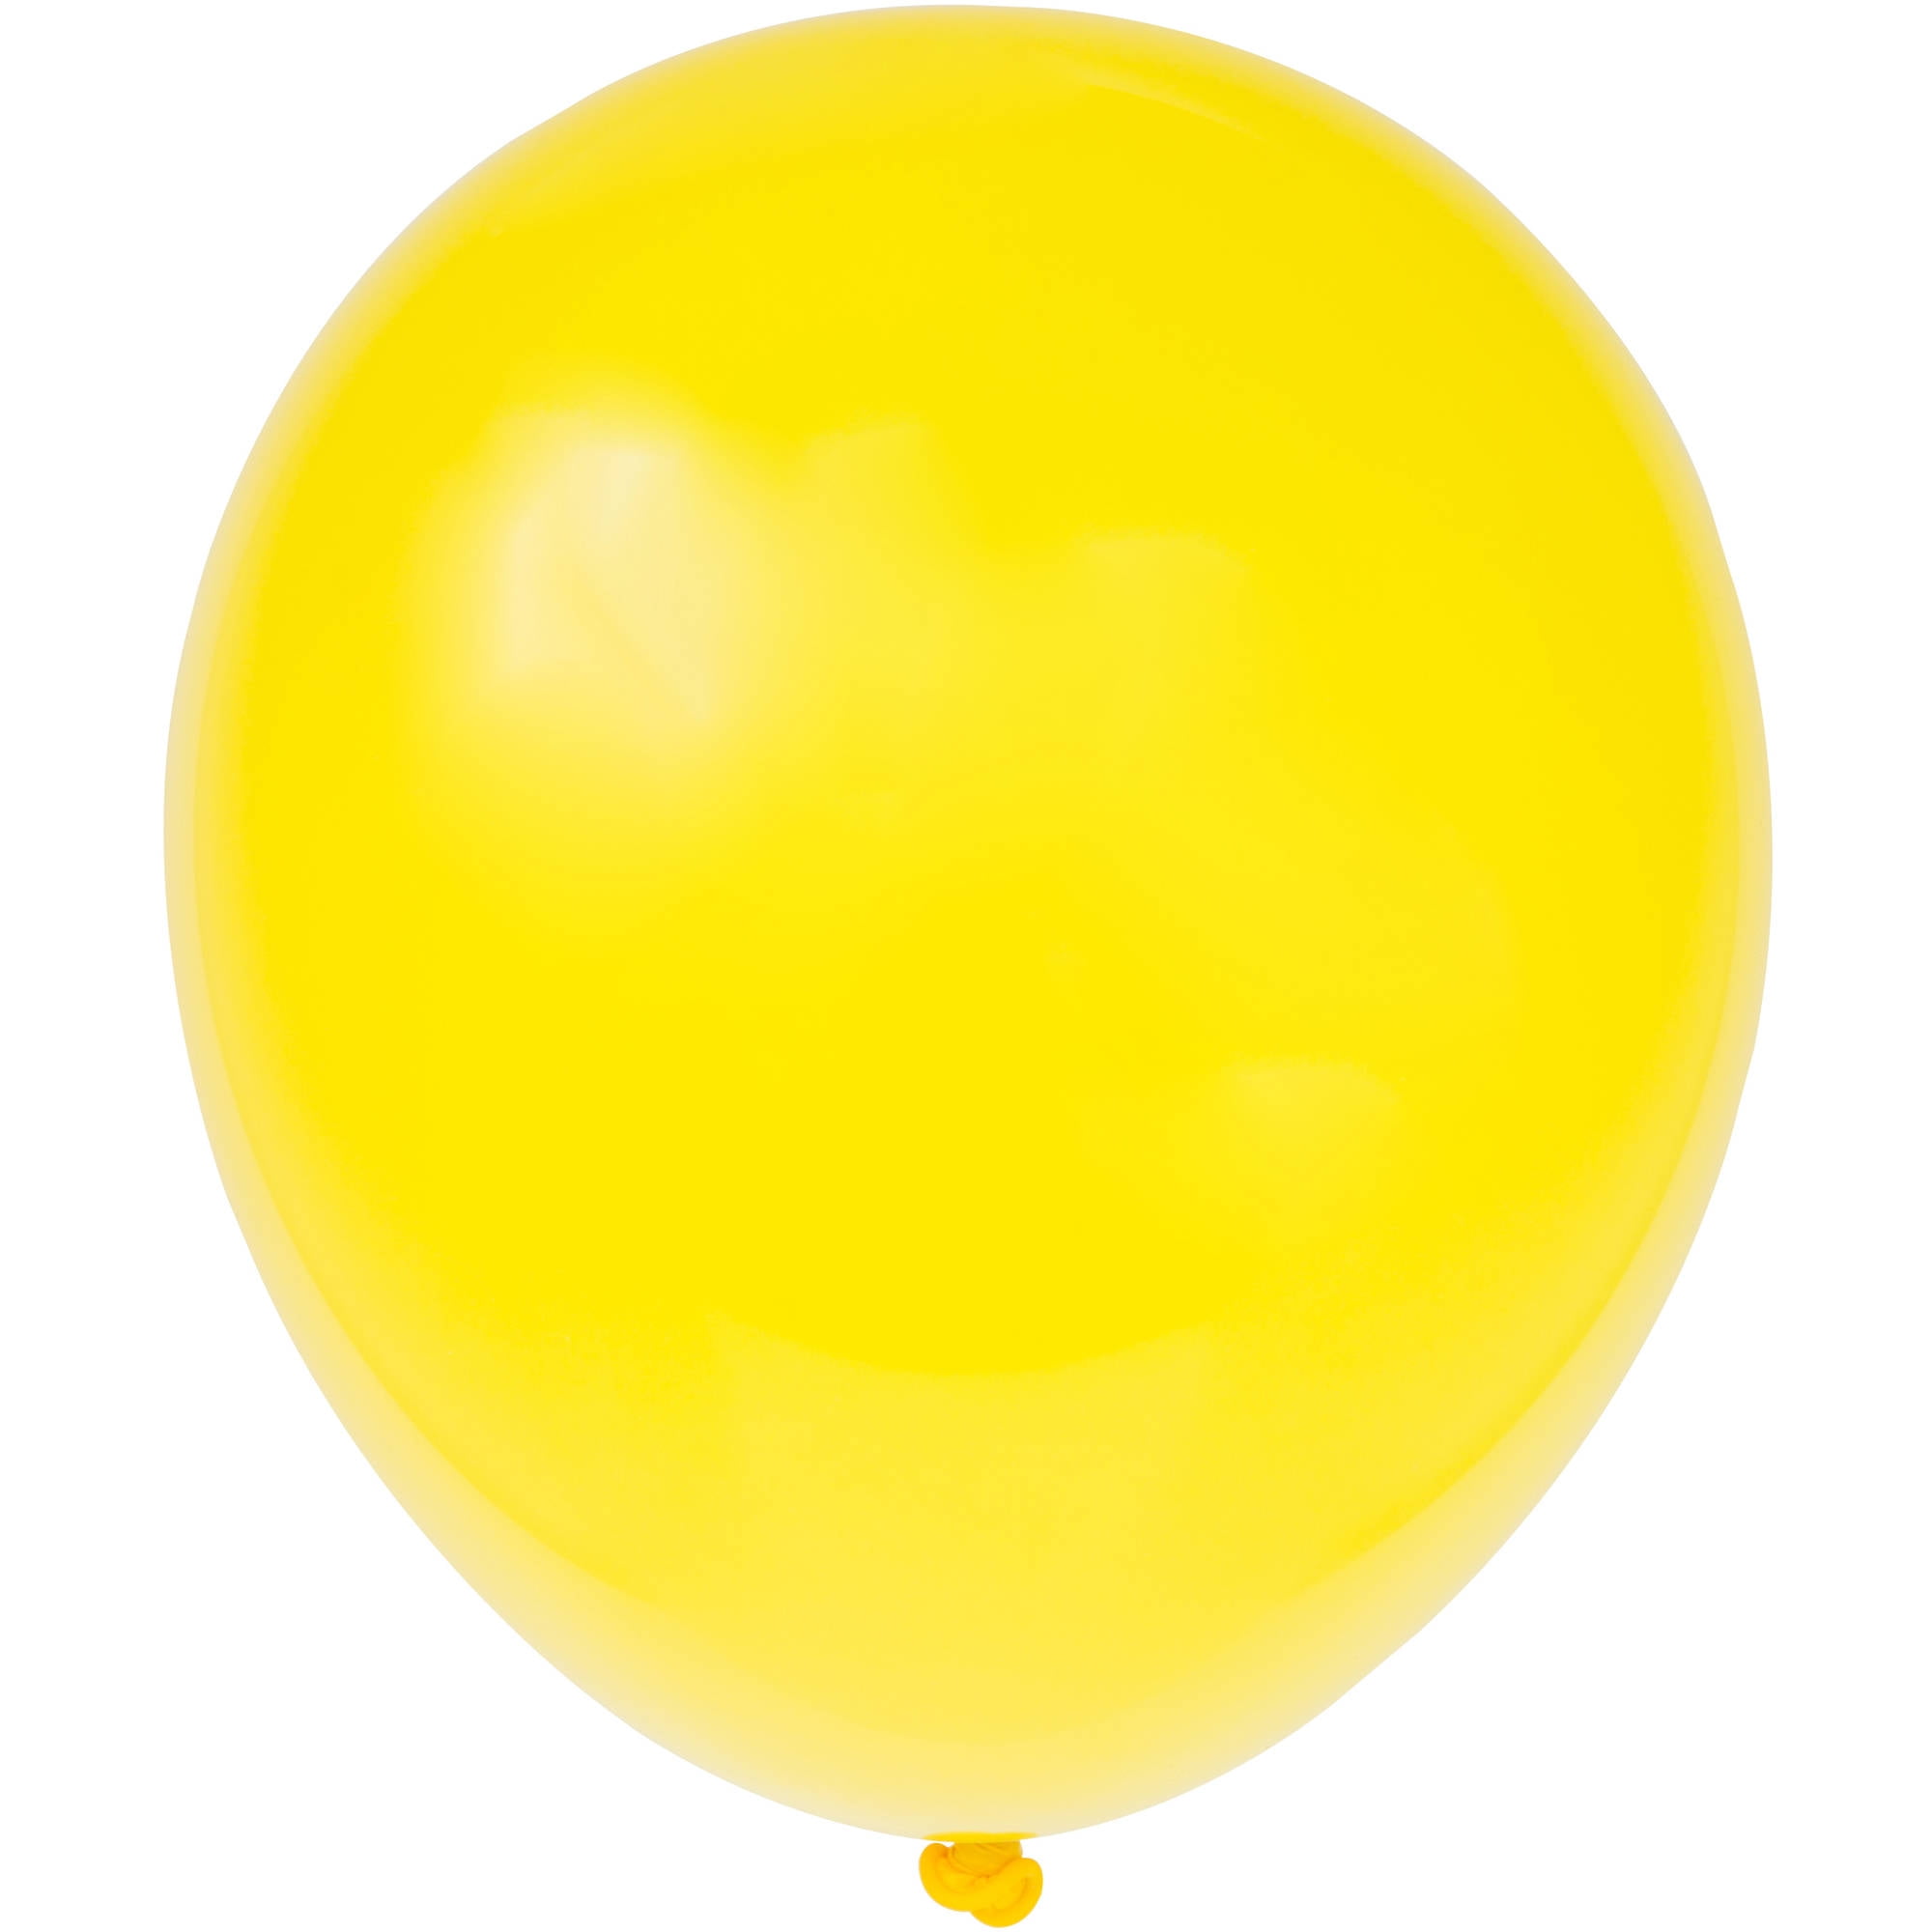 Beistle Metallic Wrapped Balloon Weight 6 oz Yellow Cellophane - 12 Pack